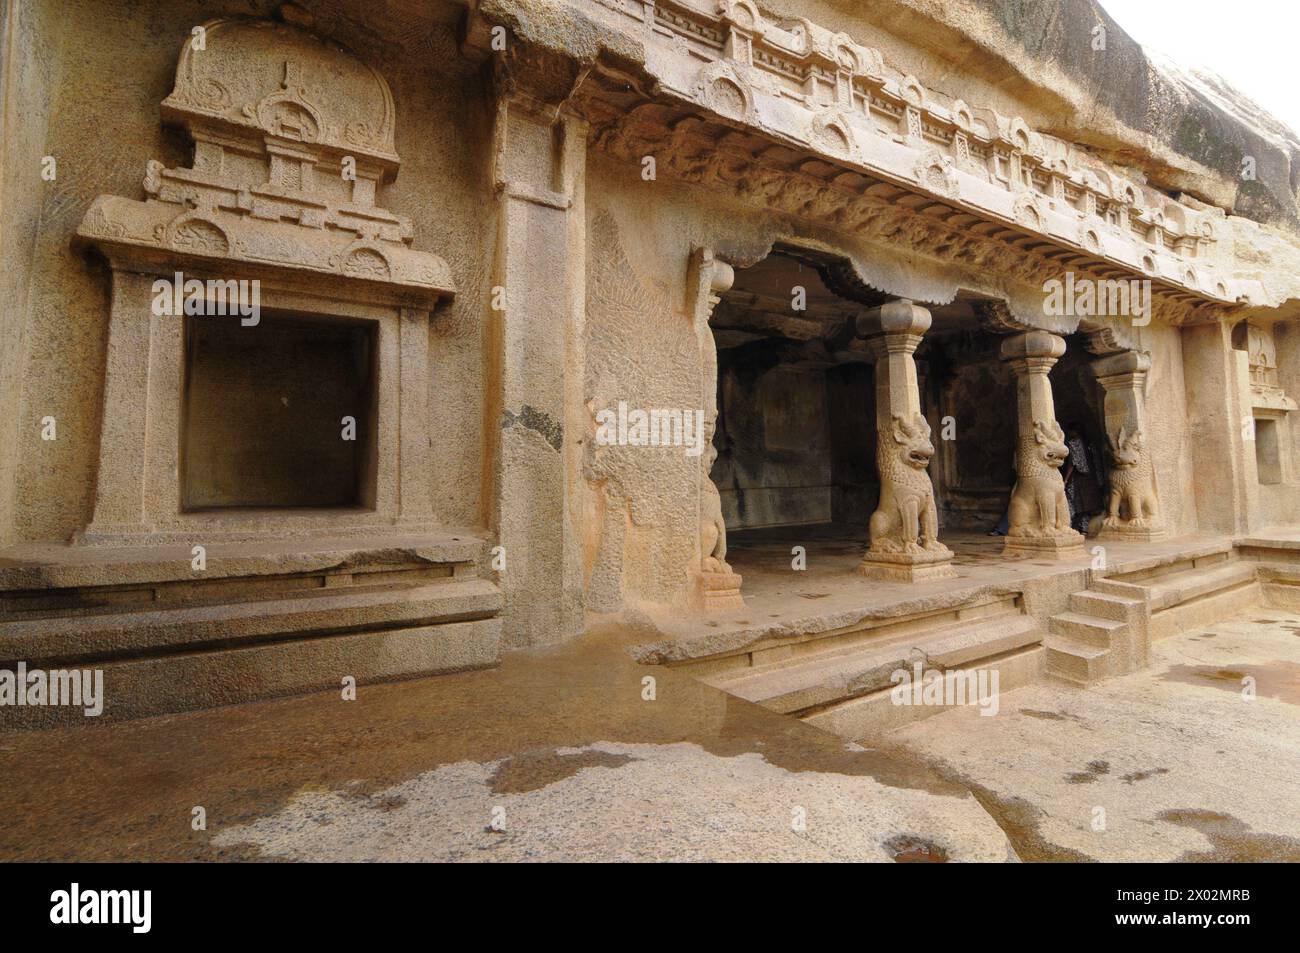 Ramanuja Mandapam, temple sculpté dans la roche, Mahabalipuram, site du patrimoine mondial de l'UNESCO, Tamil Nadu, Inde, Asie Banque D'Images